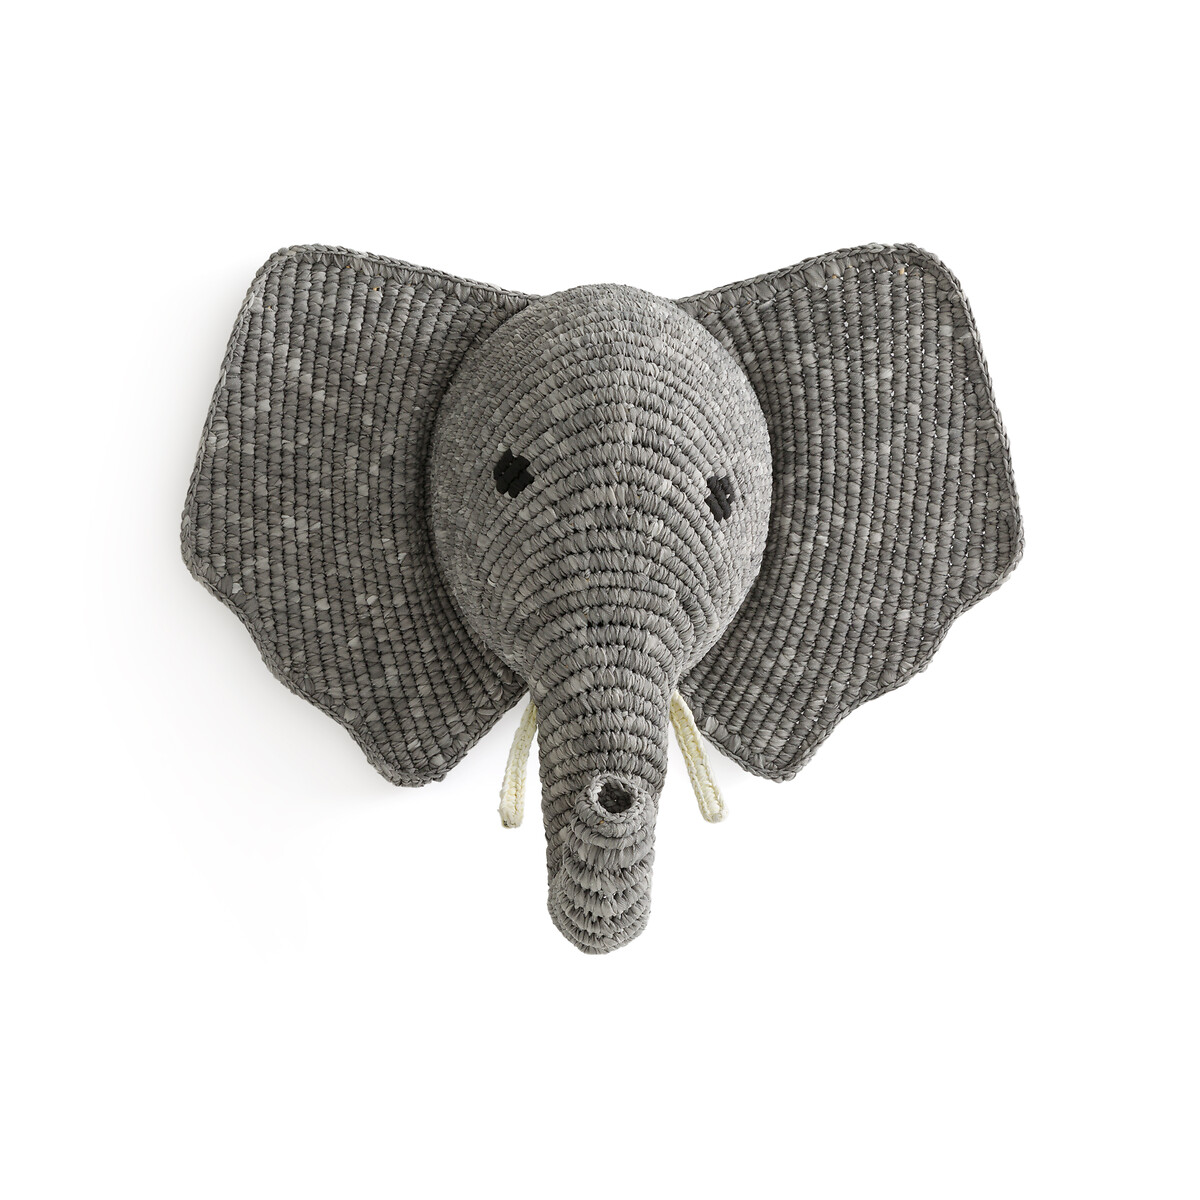 Трофей Настенный в виде слона Lapilli единый размер серый